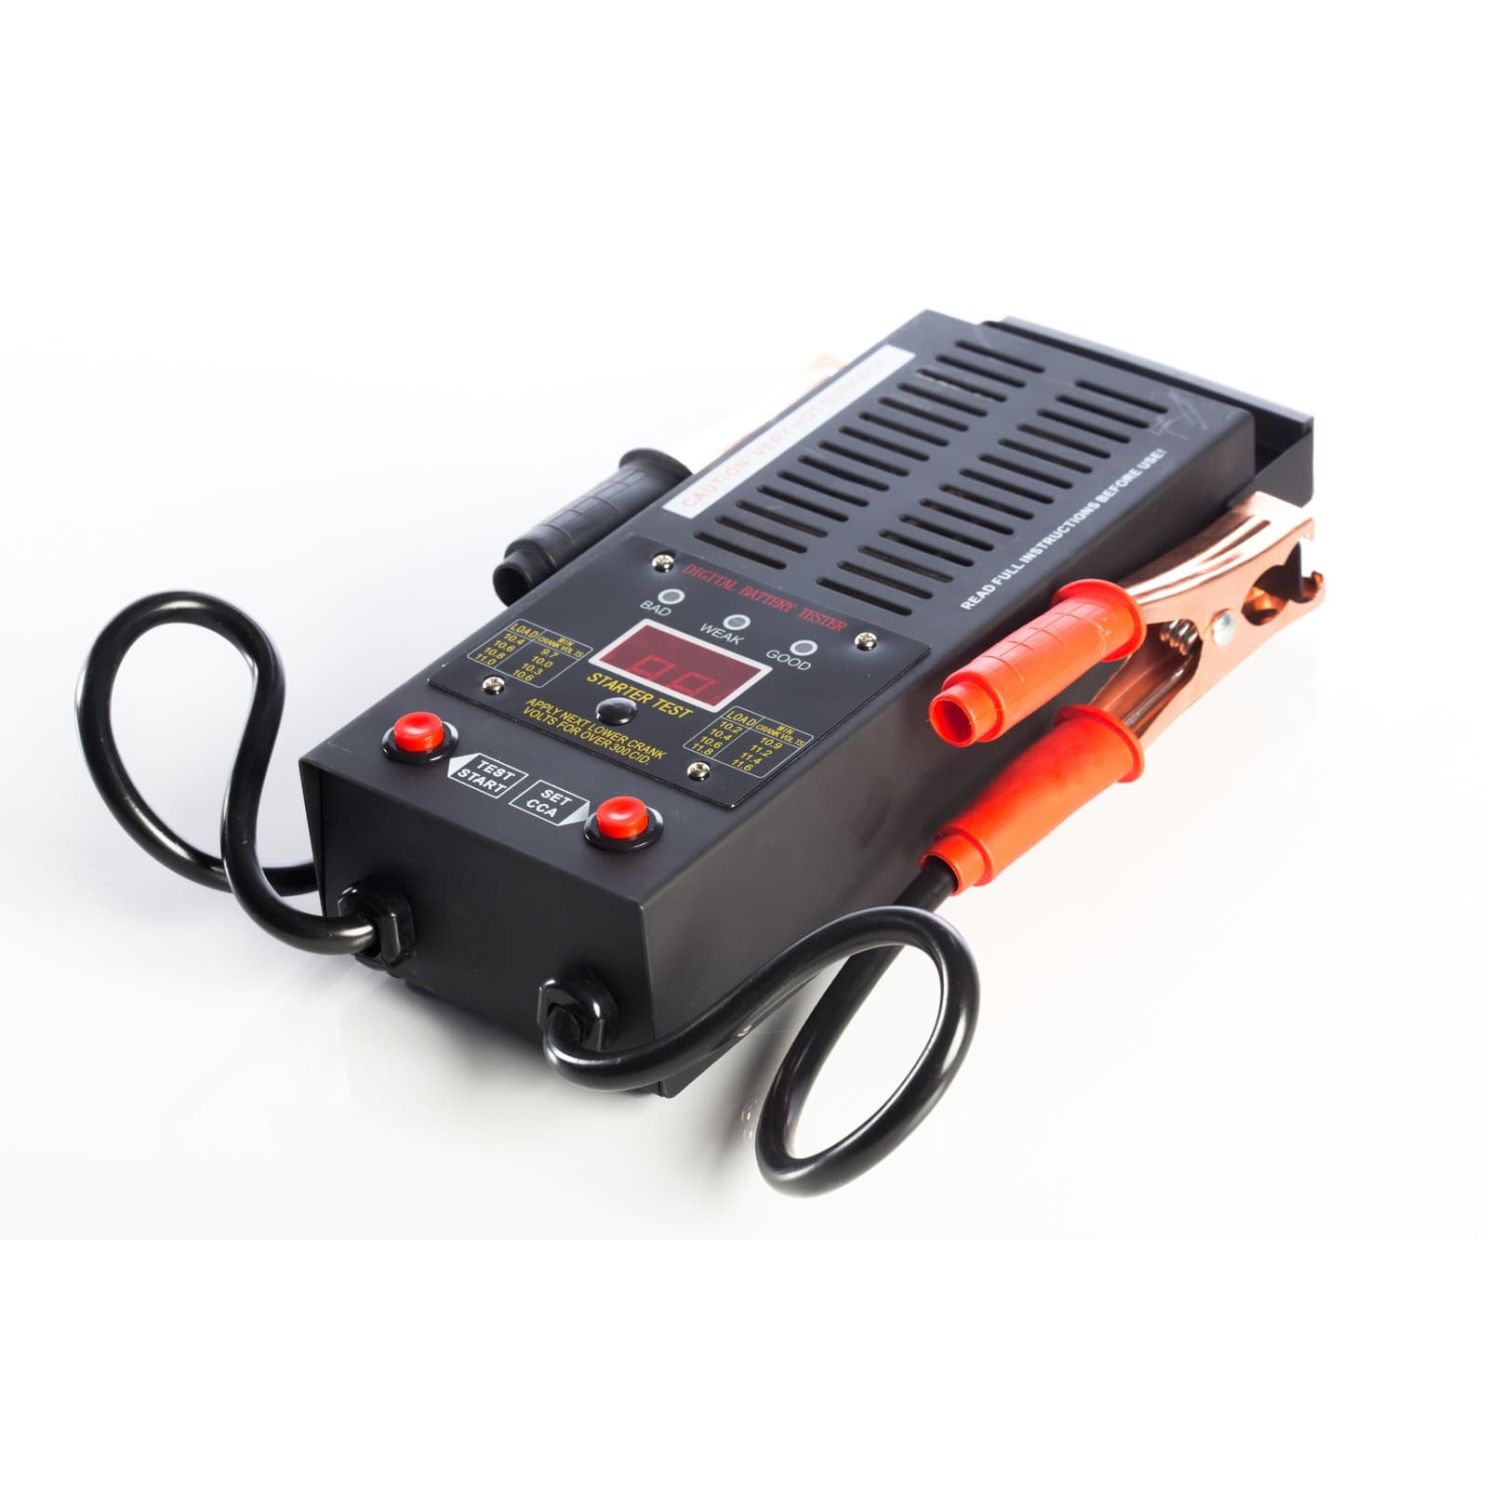 Wel-Bilt 125 Amp Digital Battery Load Tester